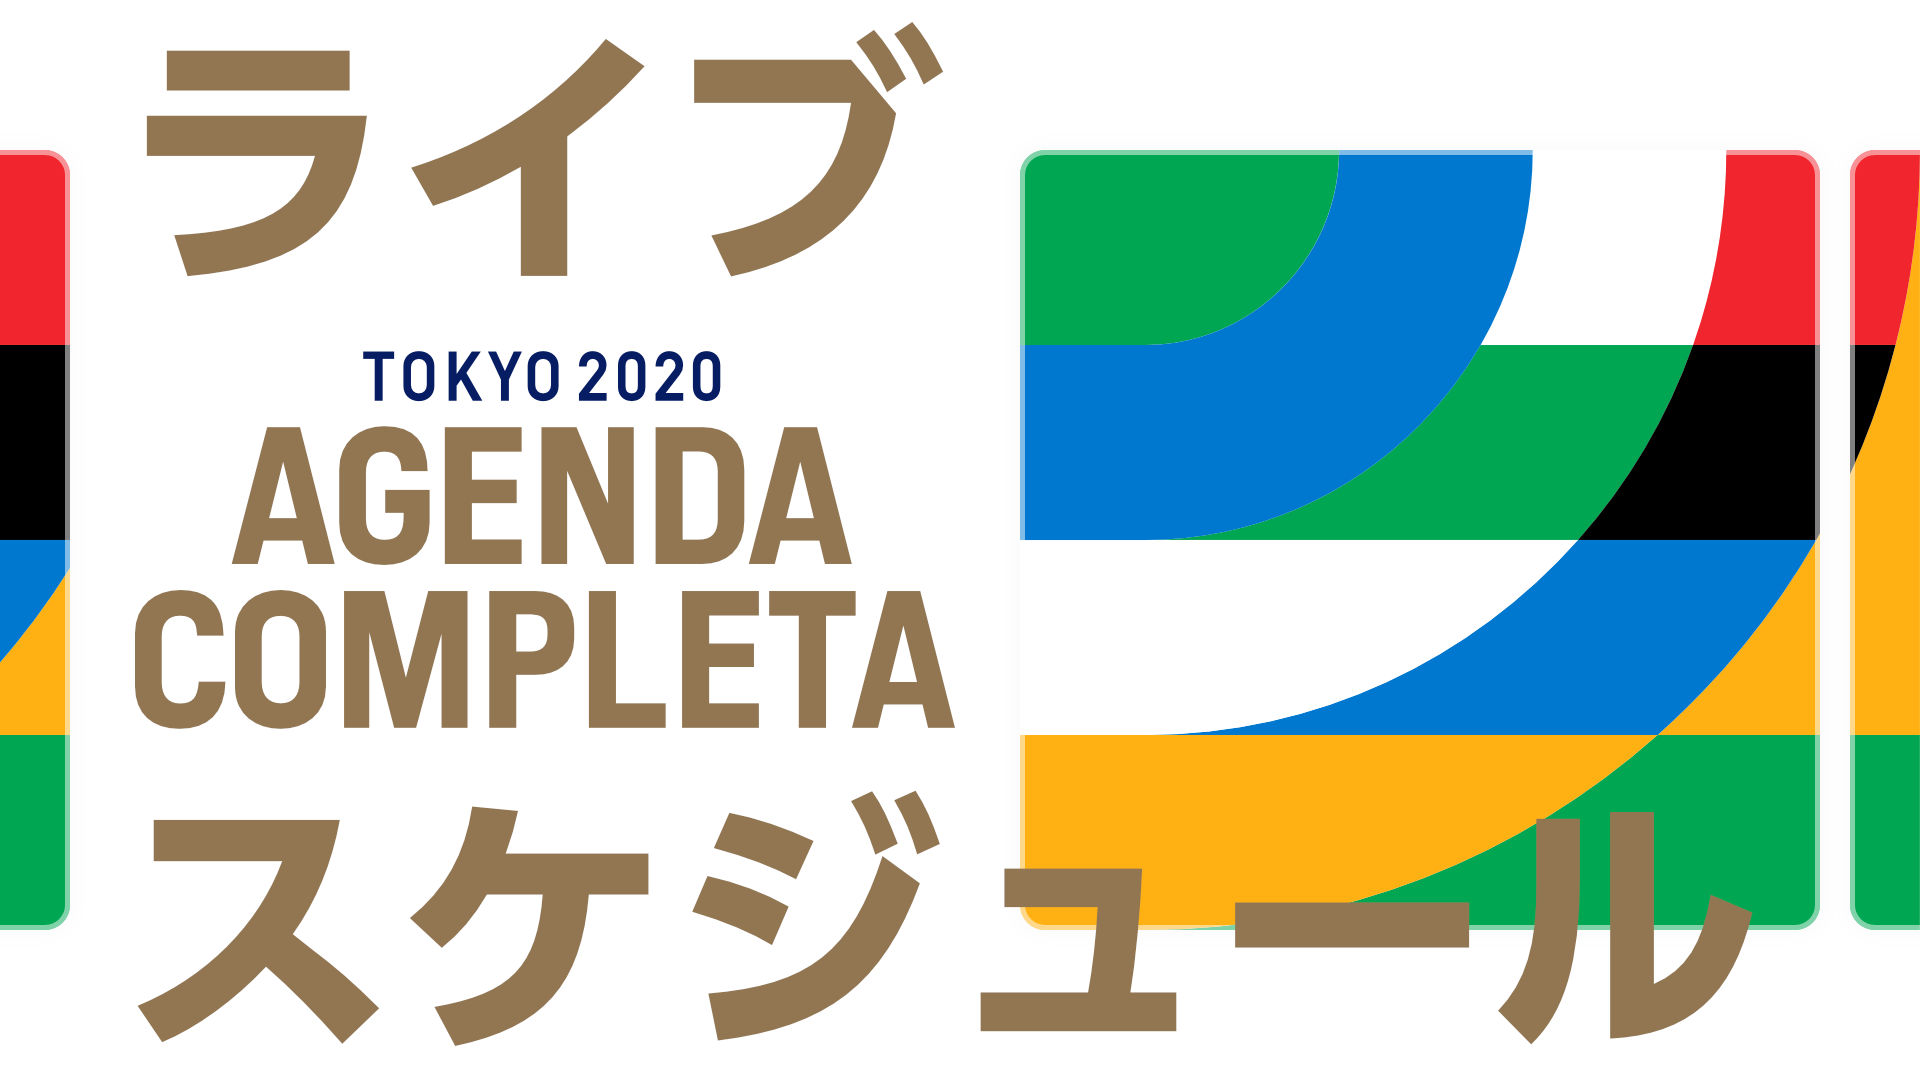 Agenda de transmisiones: Calendario y horarios de Tokyo 2020